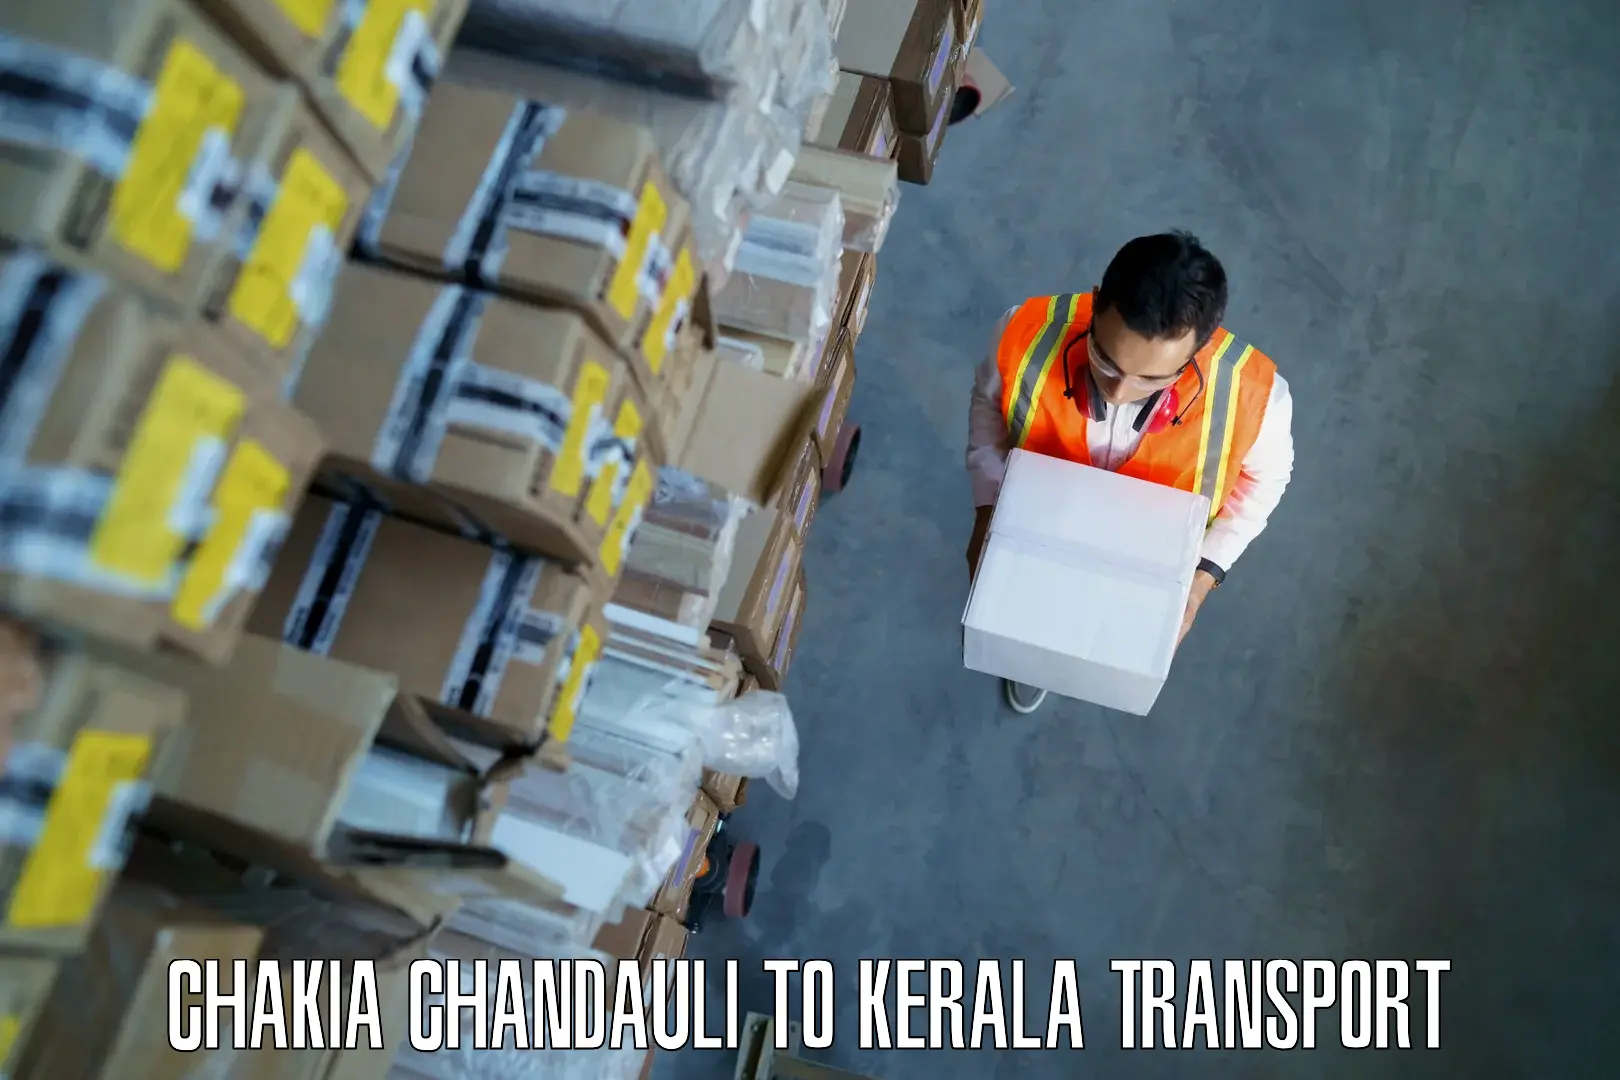 Lorry transport service Chakia Chandauli to Kerala